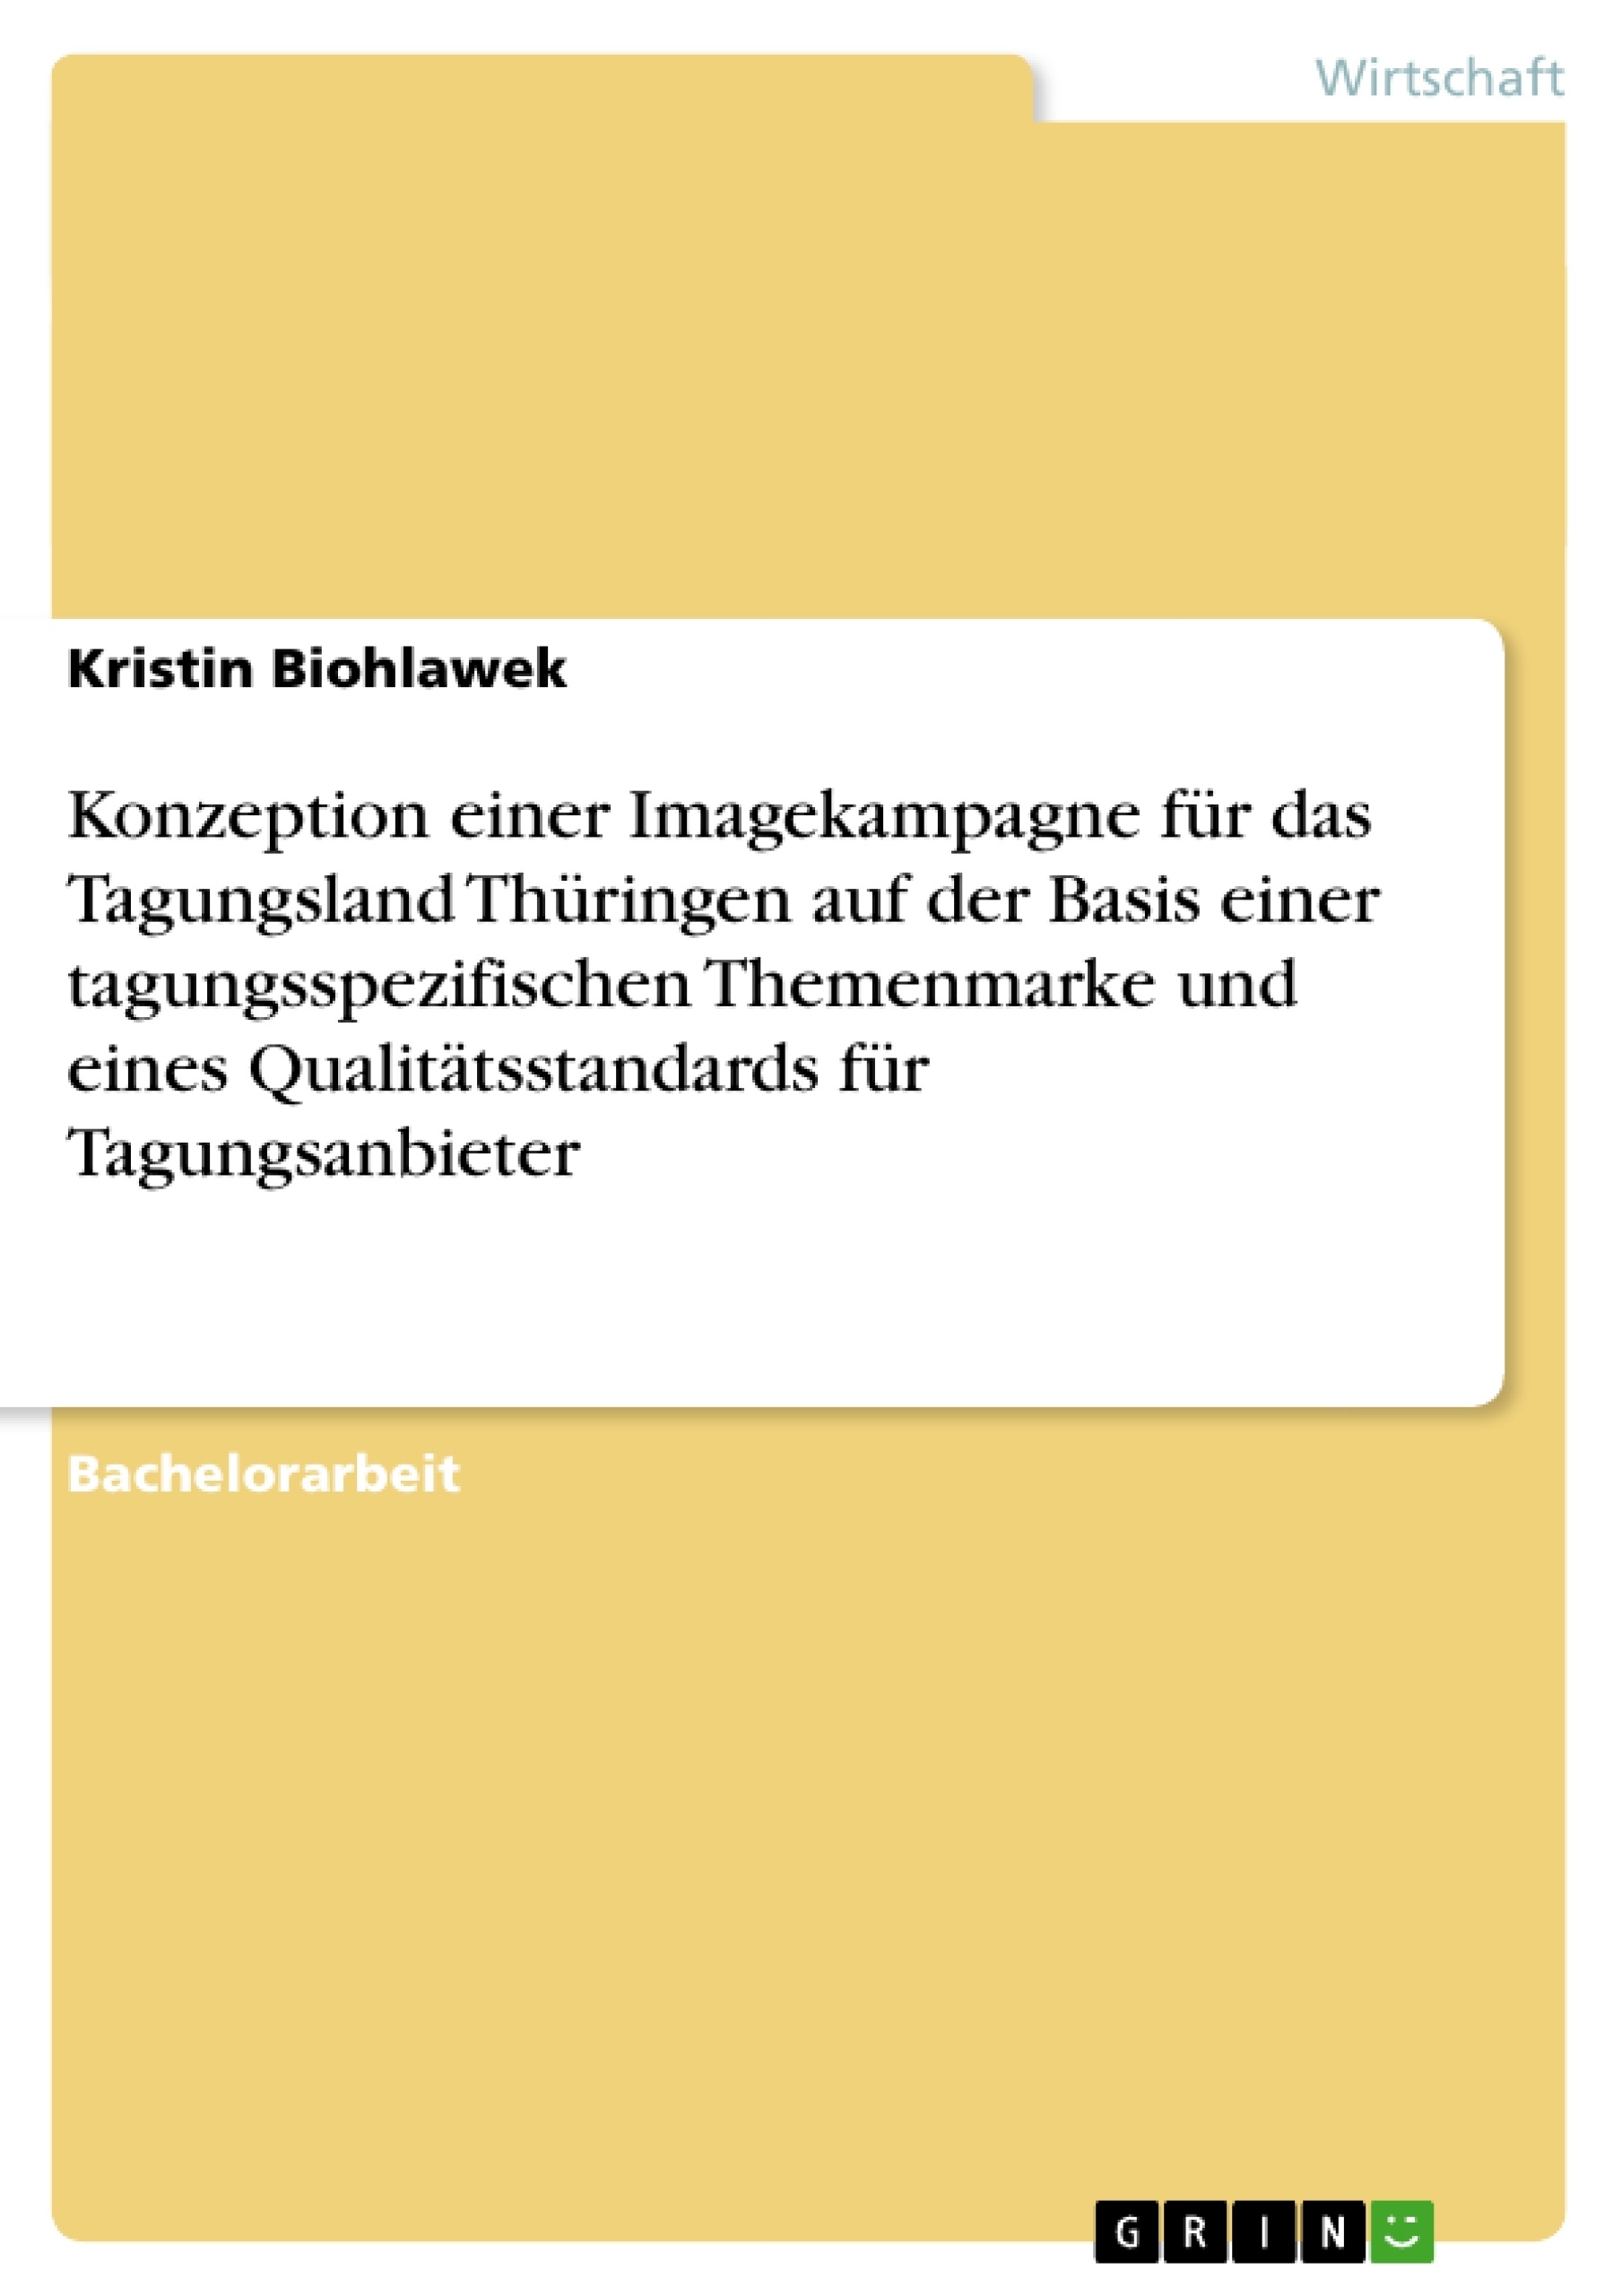 Title: Konzeption einer Imagekampagne für das Tagungsland Thüringen auf der Basis einer tagungsspezifischen Themenmarke und eines Qualitätsstandards für Tagungsanbieter